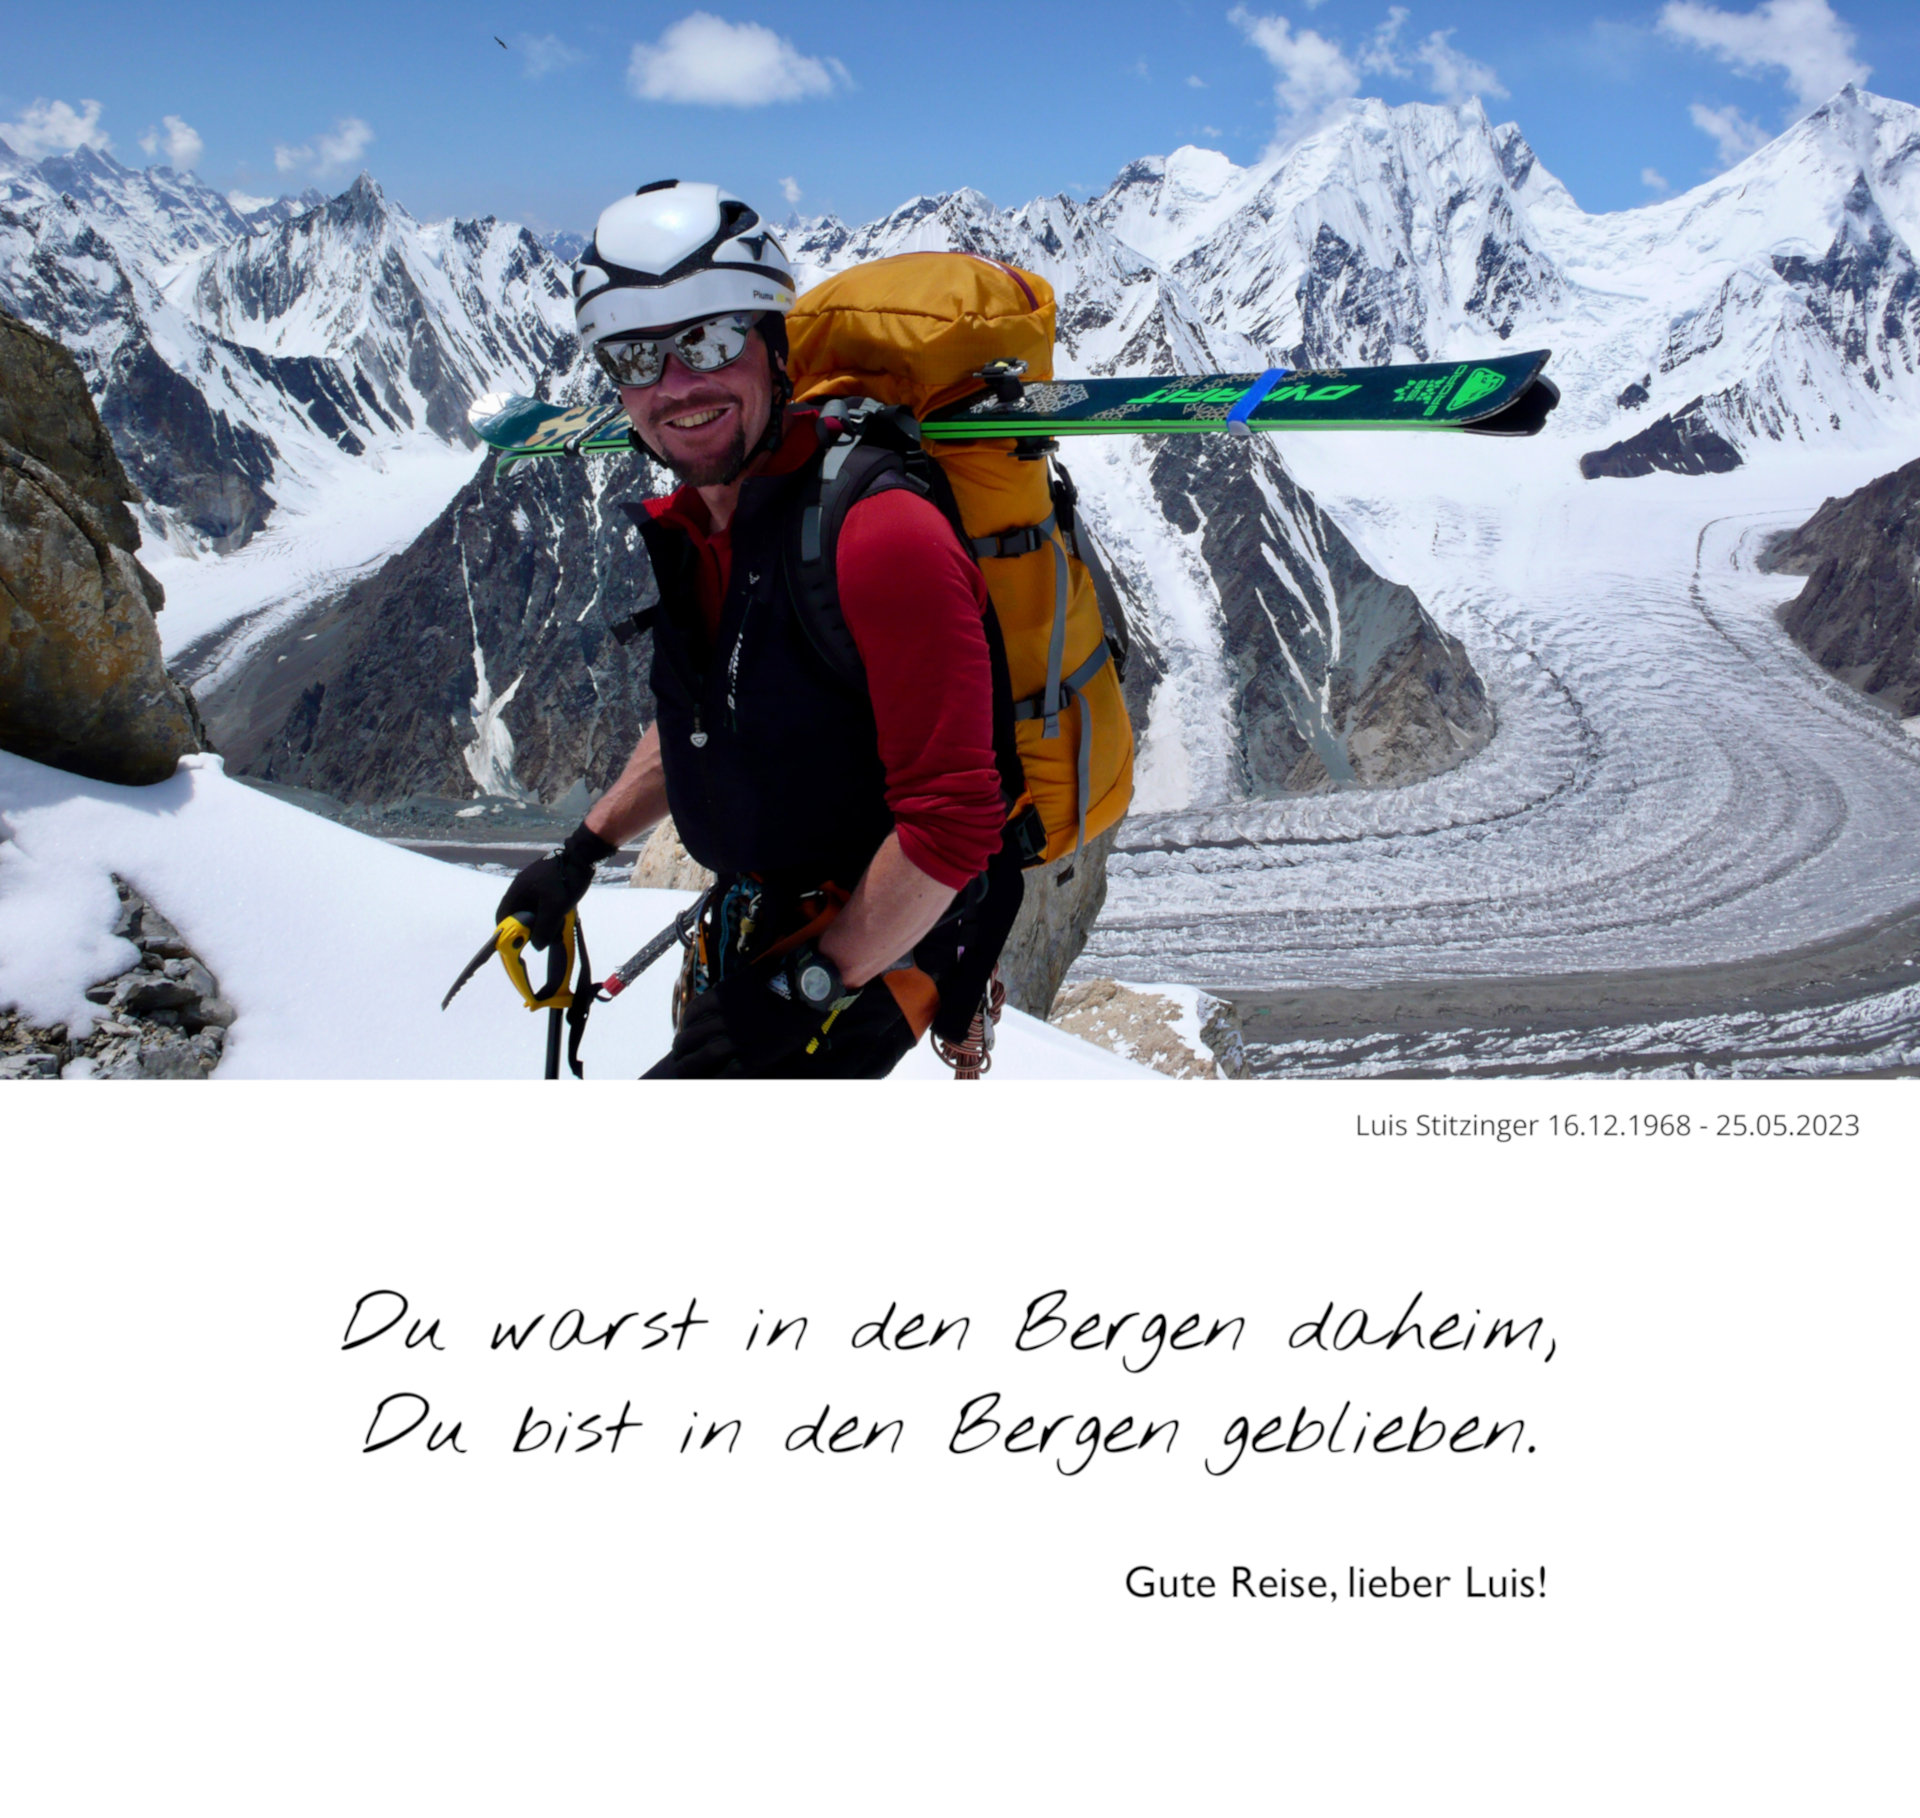 Luis Stitzinger mit Rucksack und Ski in den Bergen